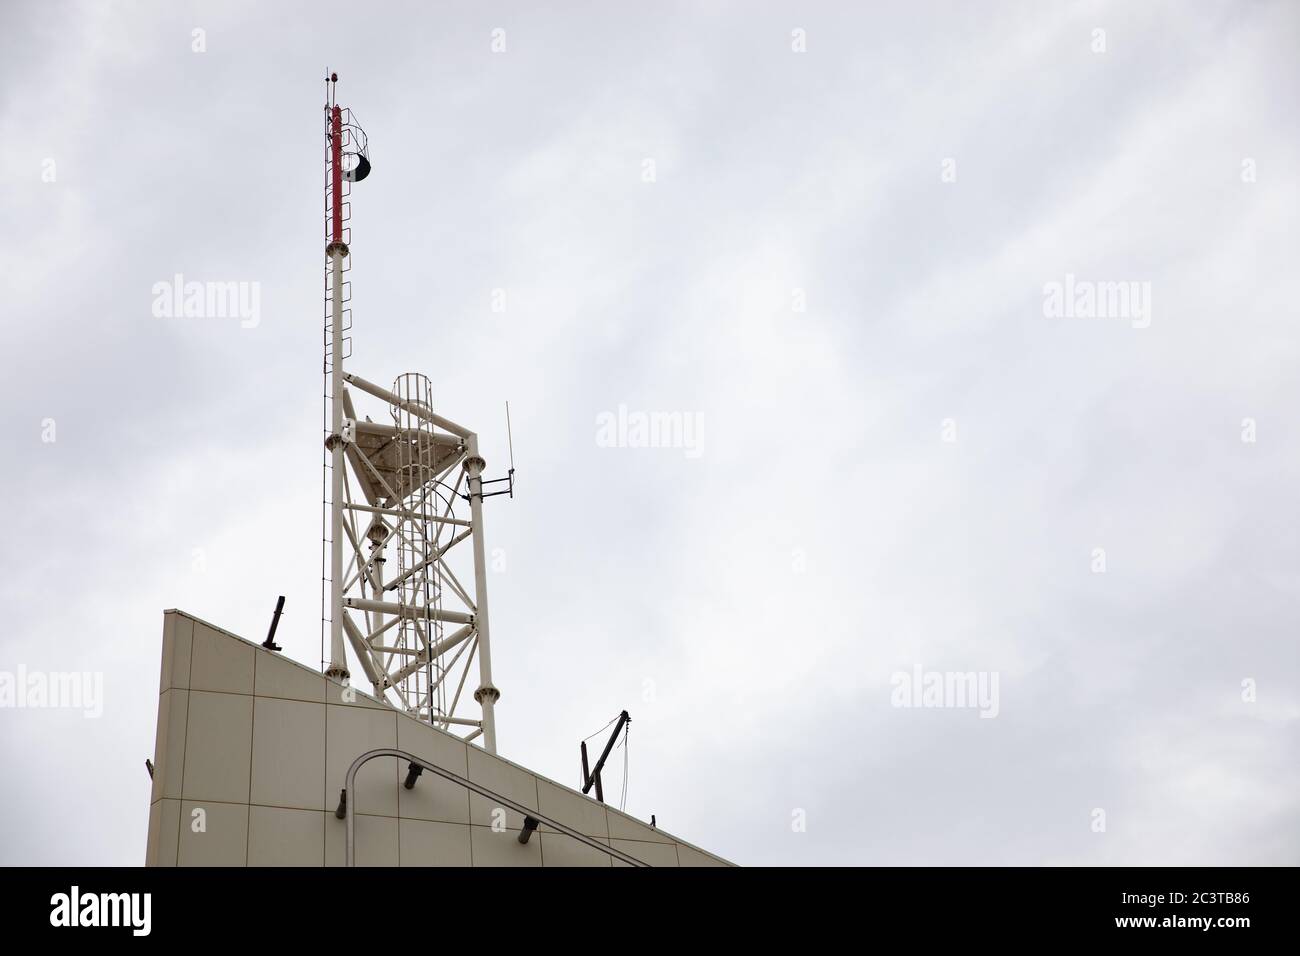 Signalrakete auf dem Pier Stockfotografie - Alamy